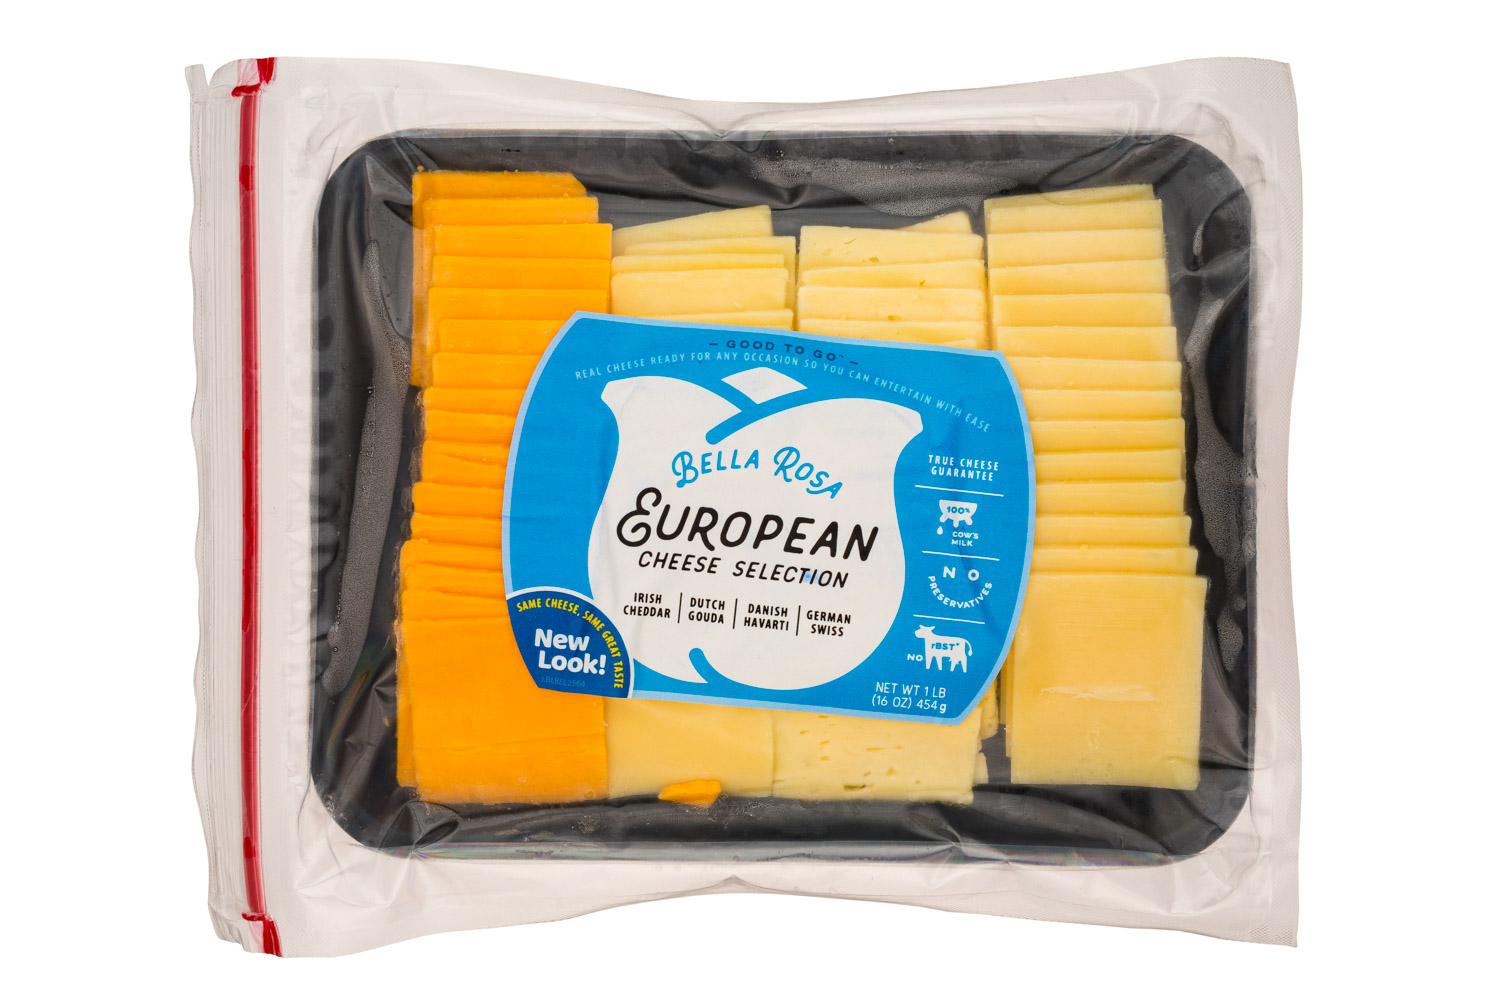 European Cheese Selection